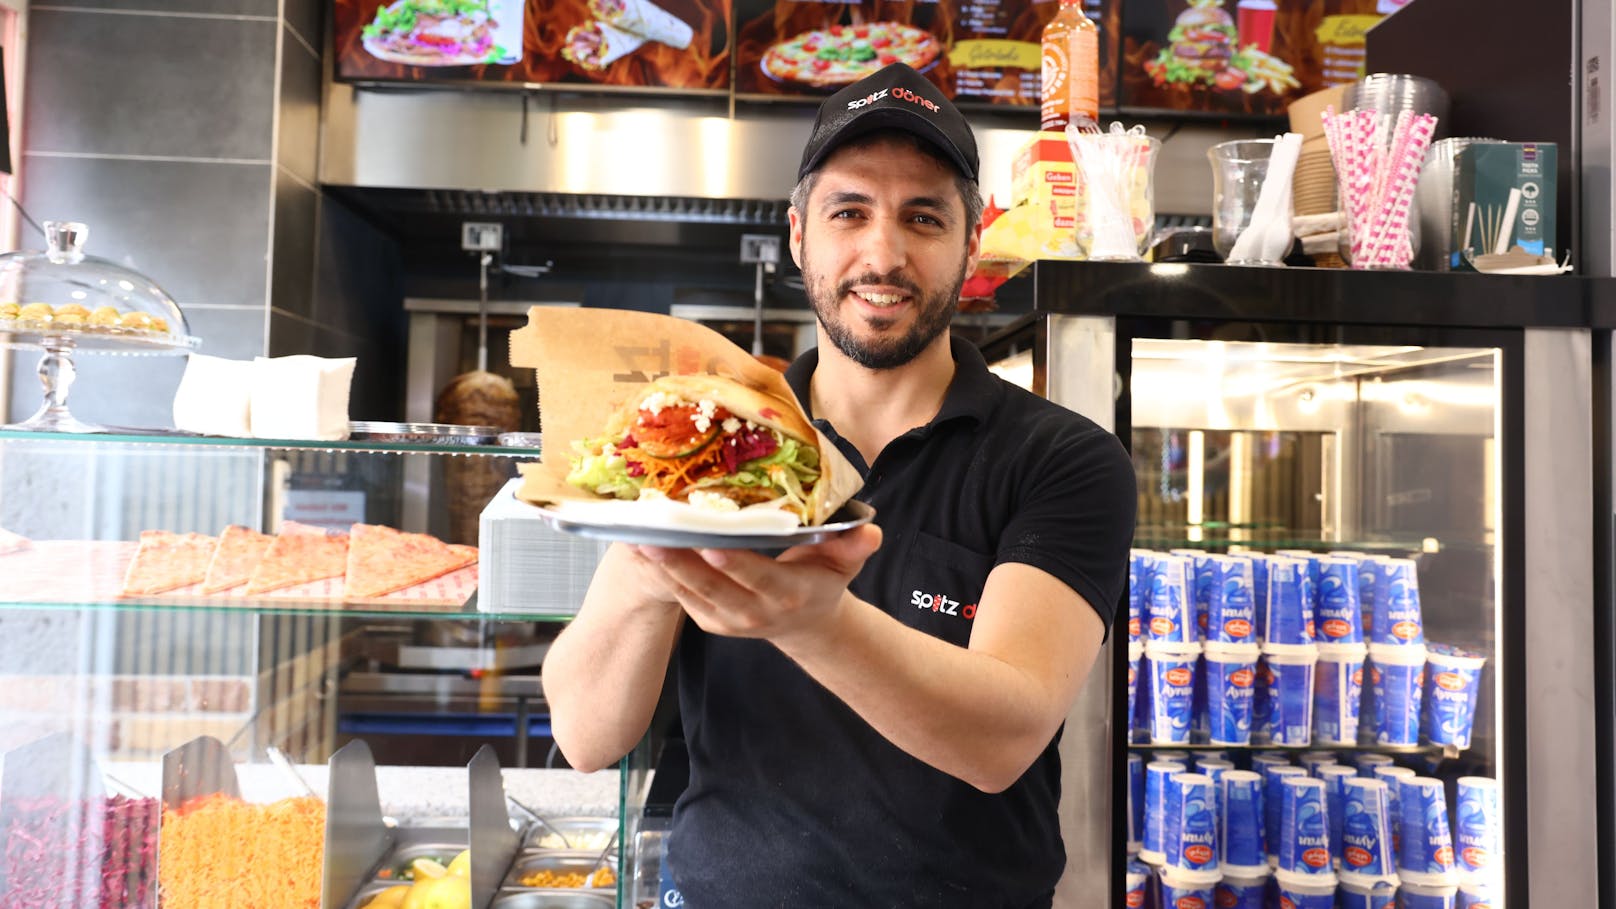 Das Restaurant "Spitz döner" in Wien-Floridsdorf hat eine neue Aktion für Kebab-Fans angekündigt – vor allem "Heute"-Leser dürfen sich freuen.